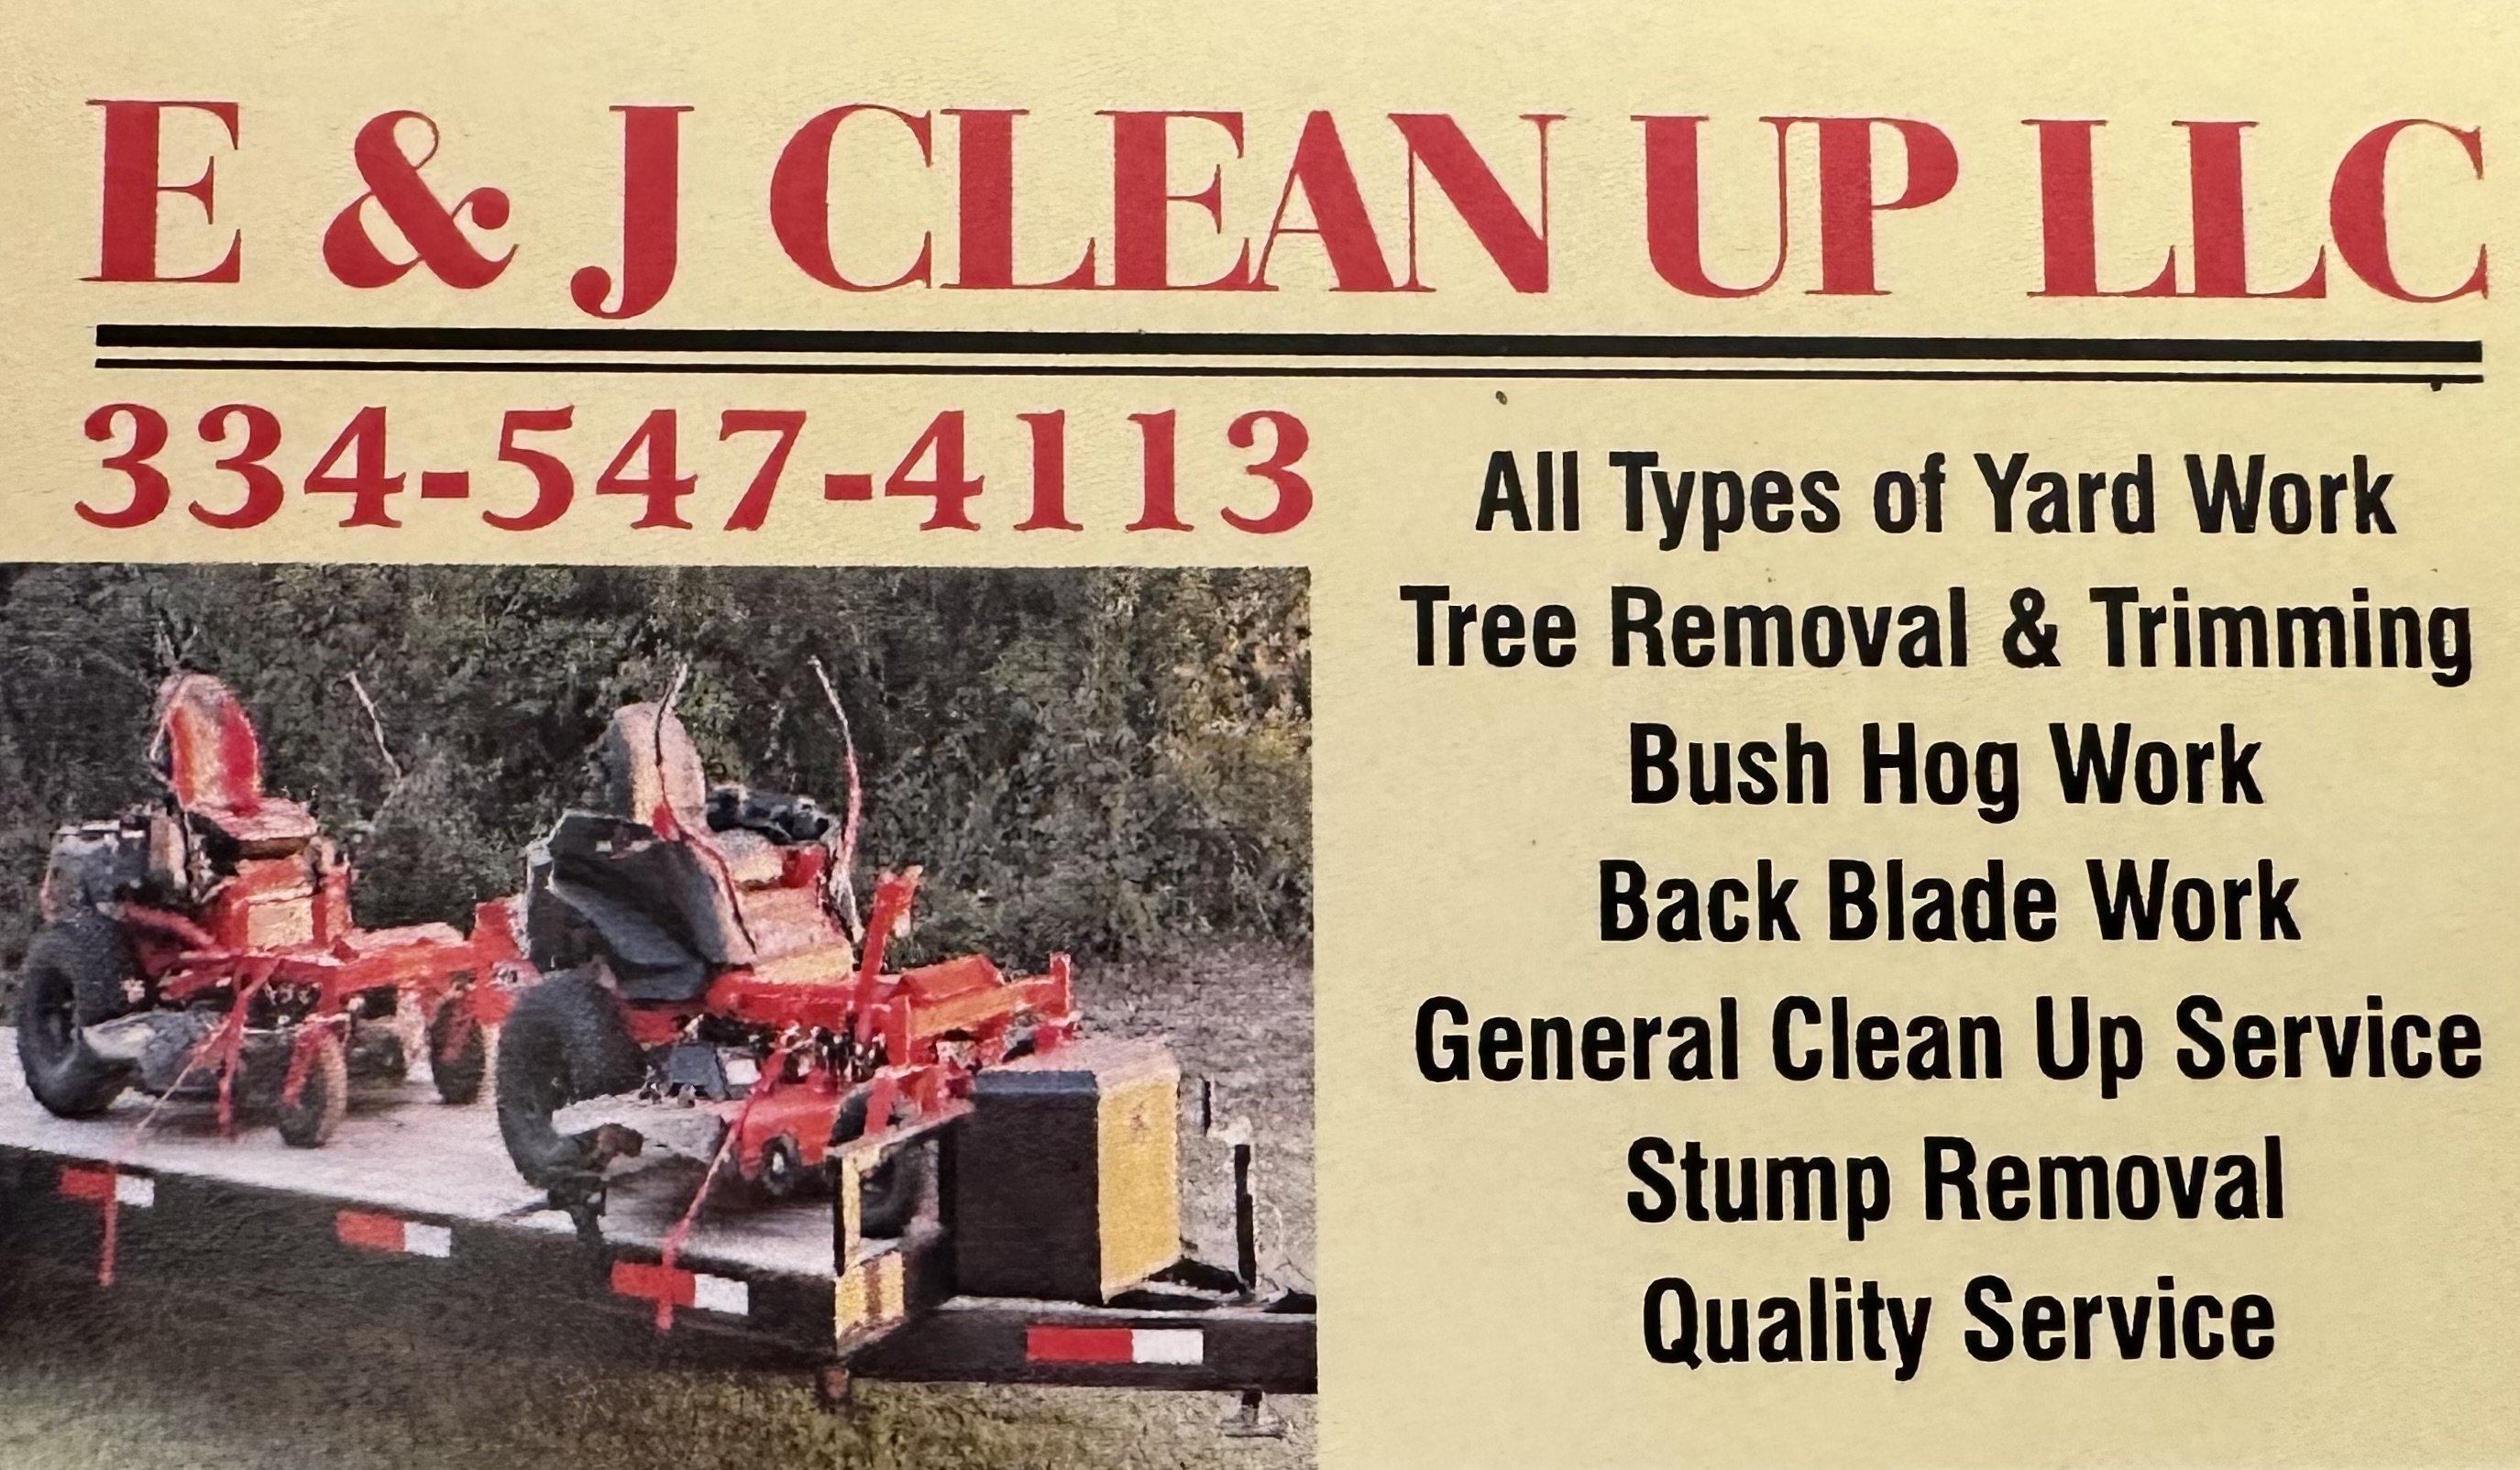 E&J Clean Up LLC